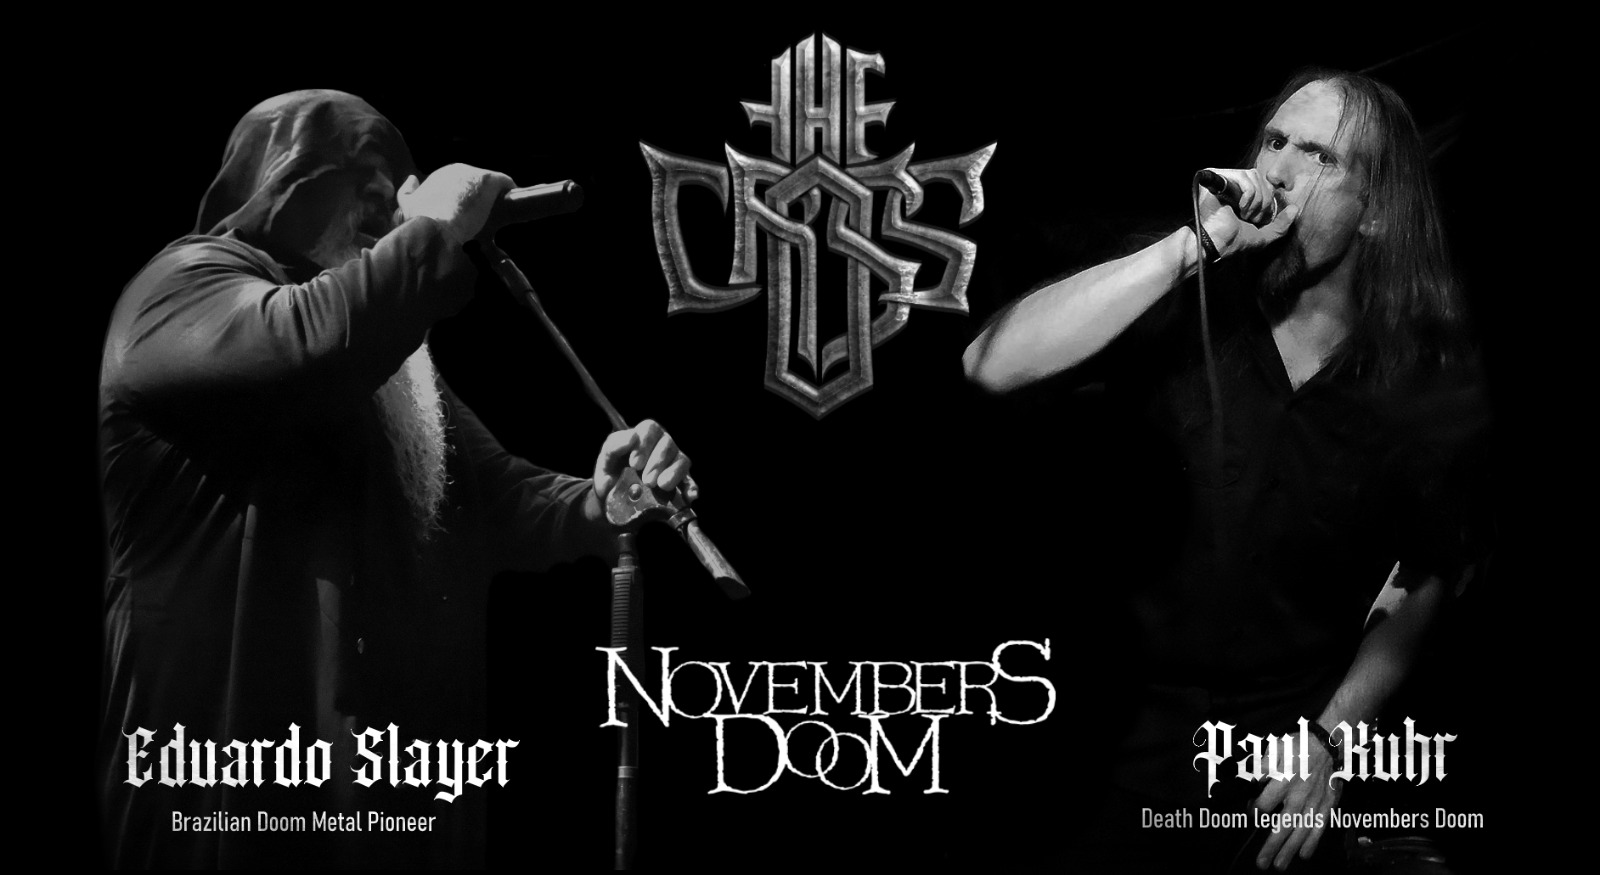 THE CROSS: Banda anuncia participação do lendário vocalista Paul Kuhr (Novembers Doom) em novo álbum